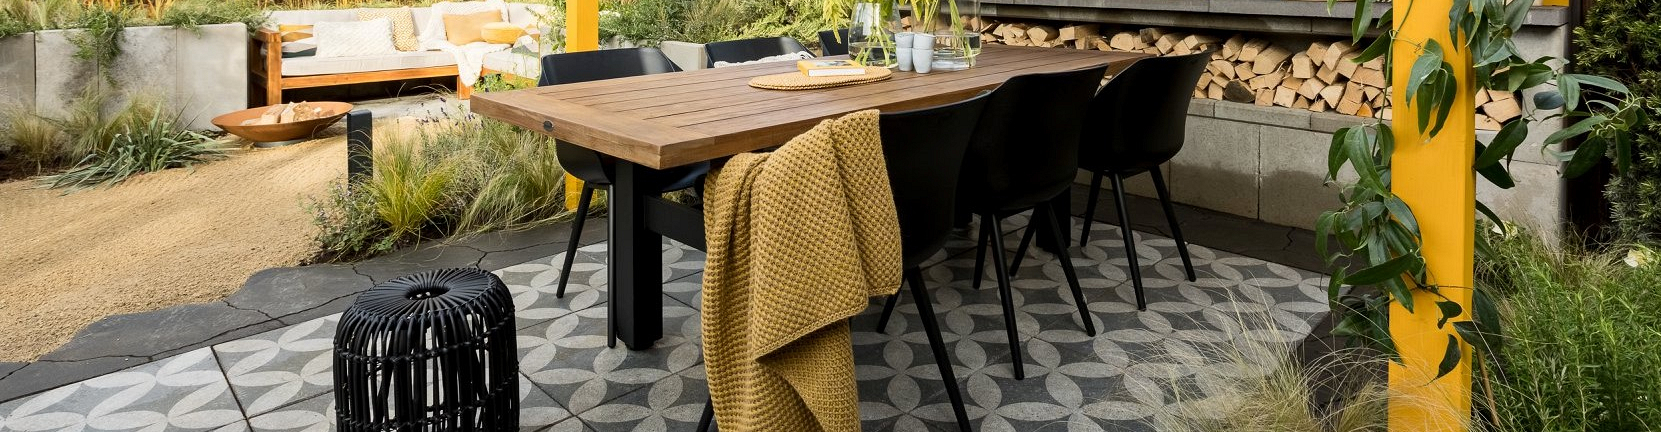 Toeval gastheer barbecue 5 manieren om een tapijt van tegels in je tuin te leggen | Bestratingsweb.nl